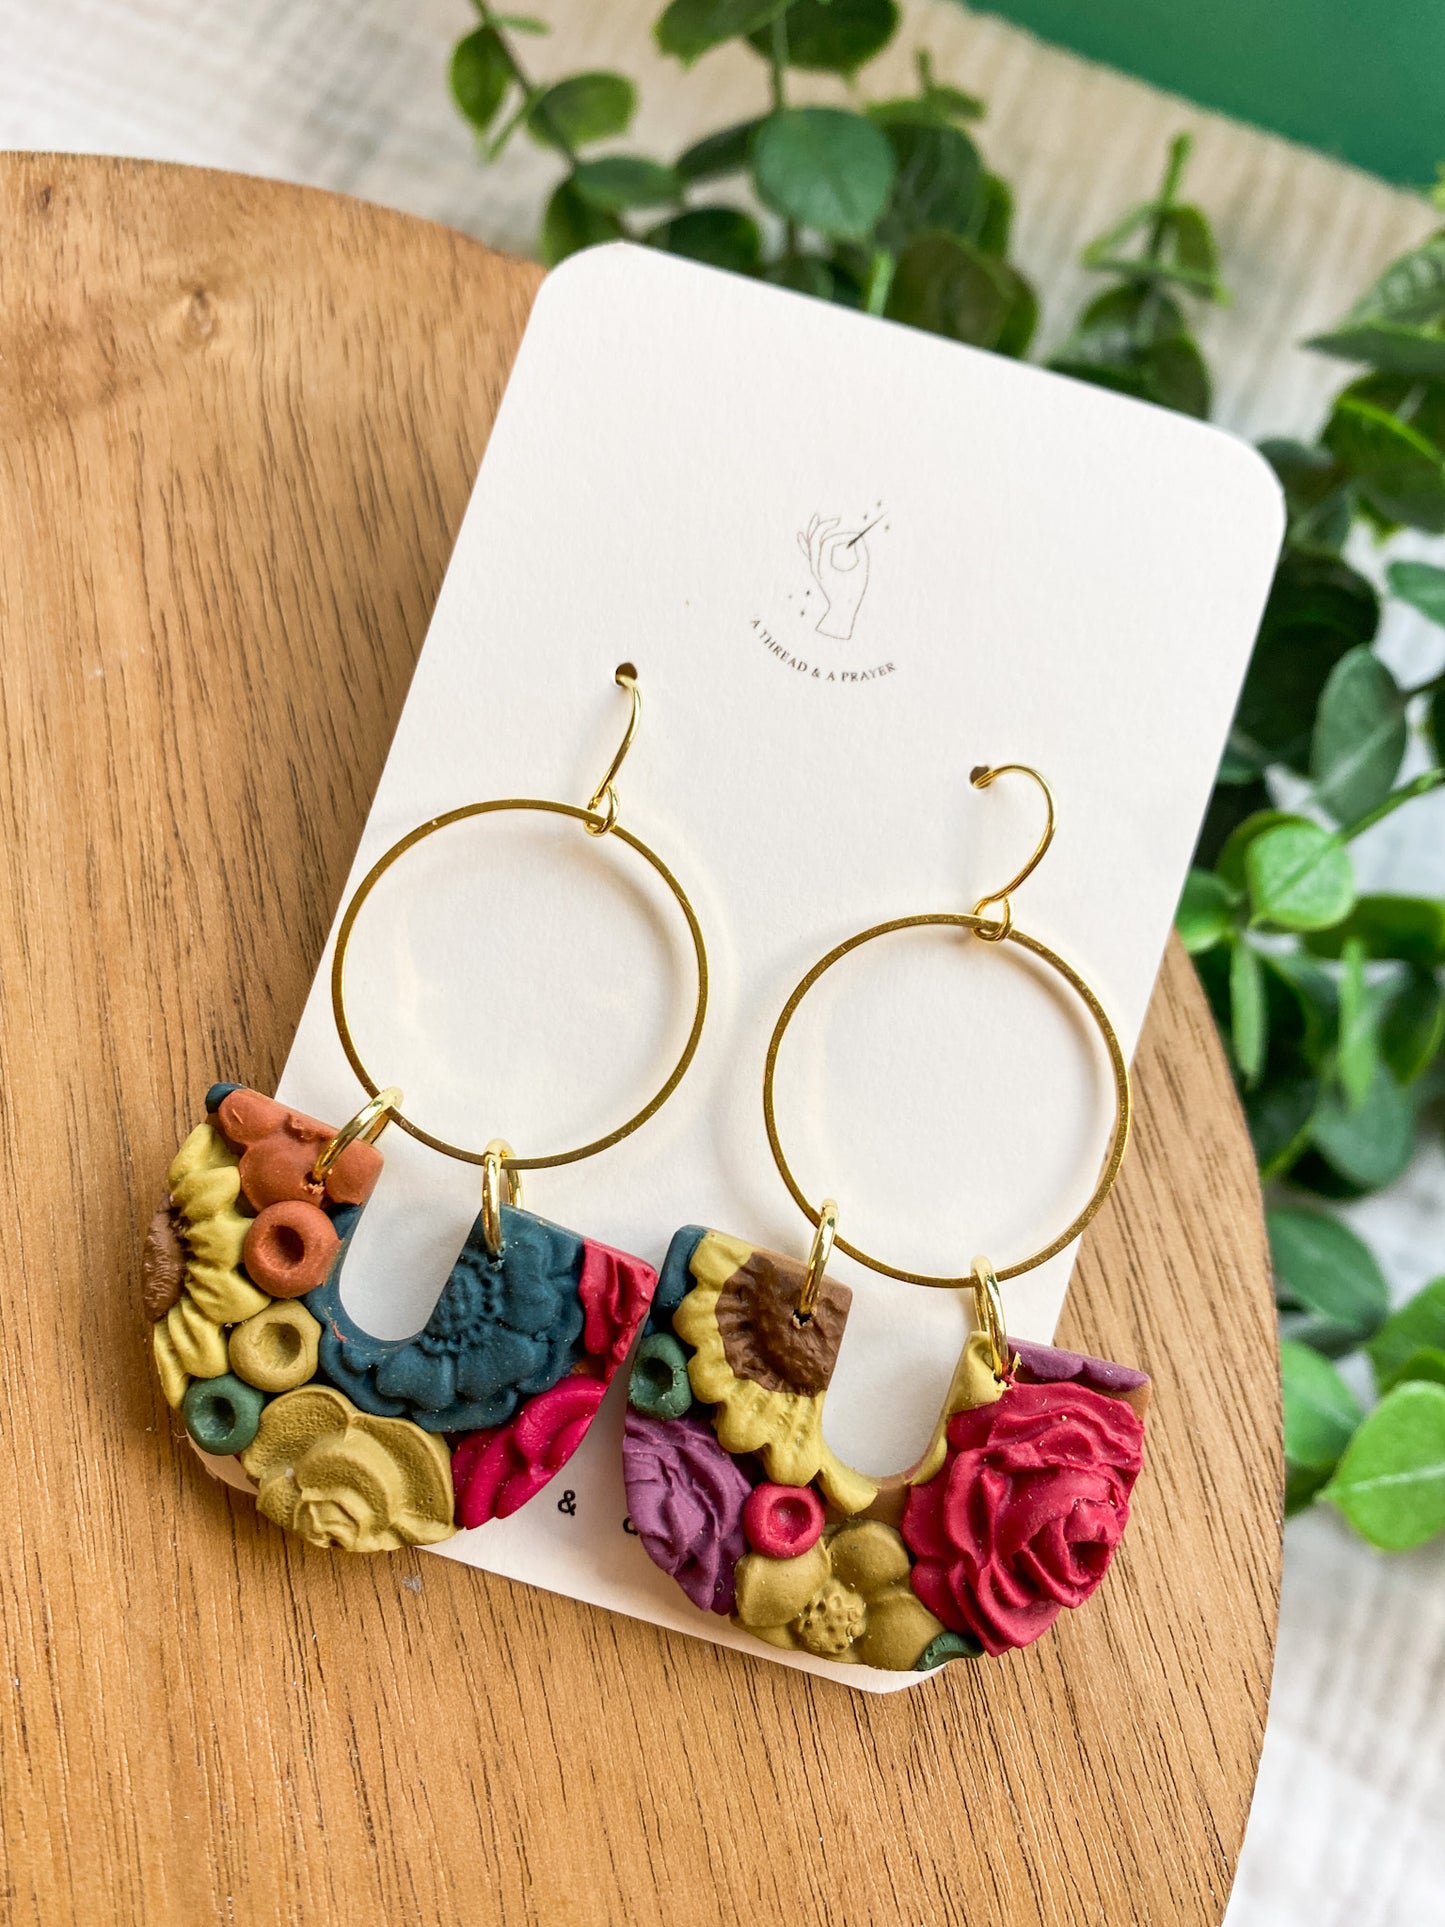 Bright and Fun Fall Floral Earrings | Flower Garden Earrings | Dangle Clay Earrings